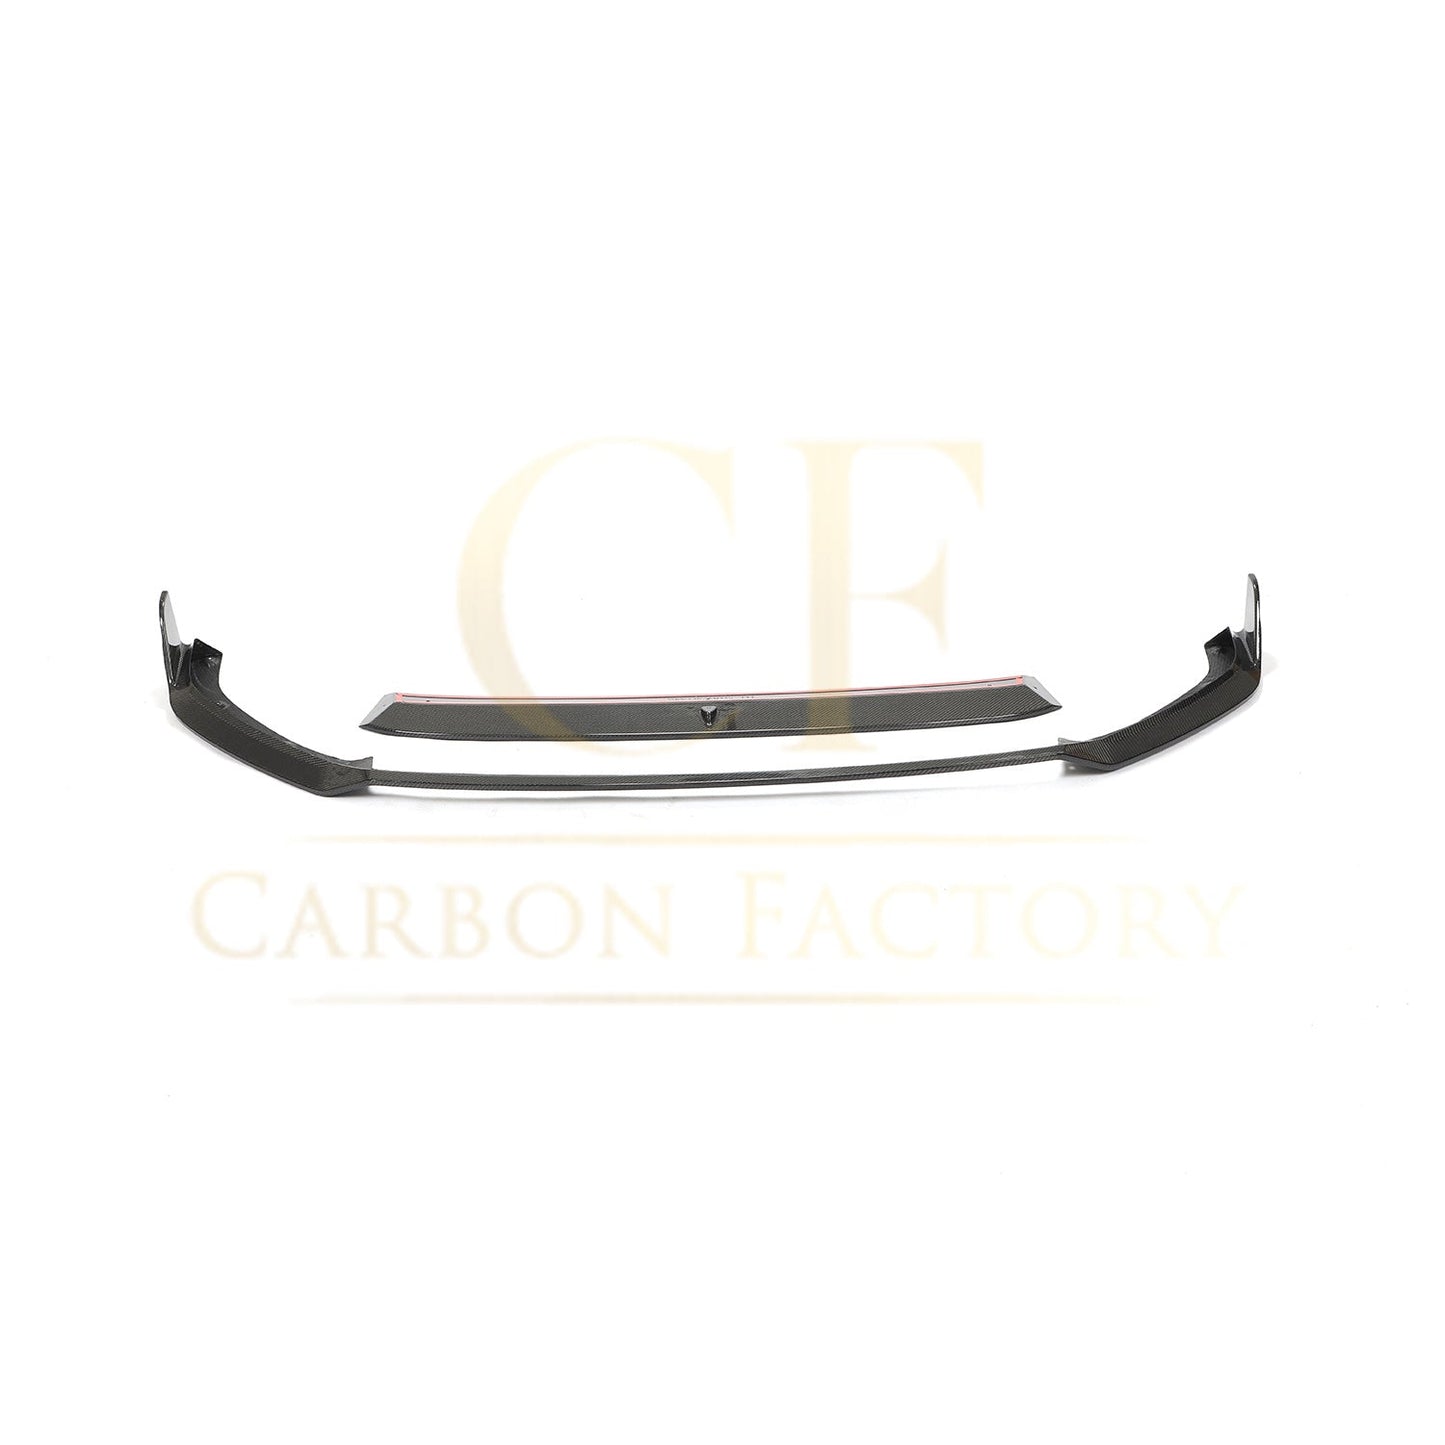 VW Golf MK7.5 GTI MK Style Carbon Fibre Front Splitter 18-20-Carbon Factory